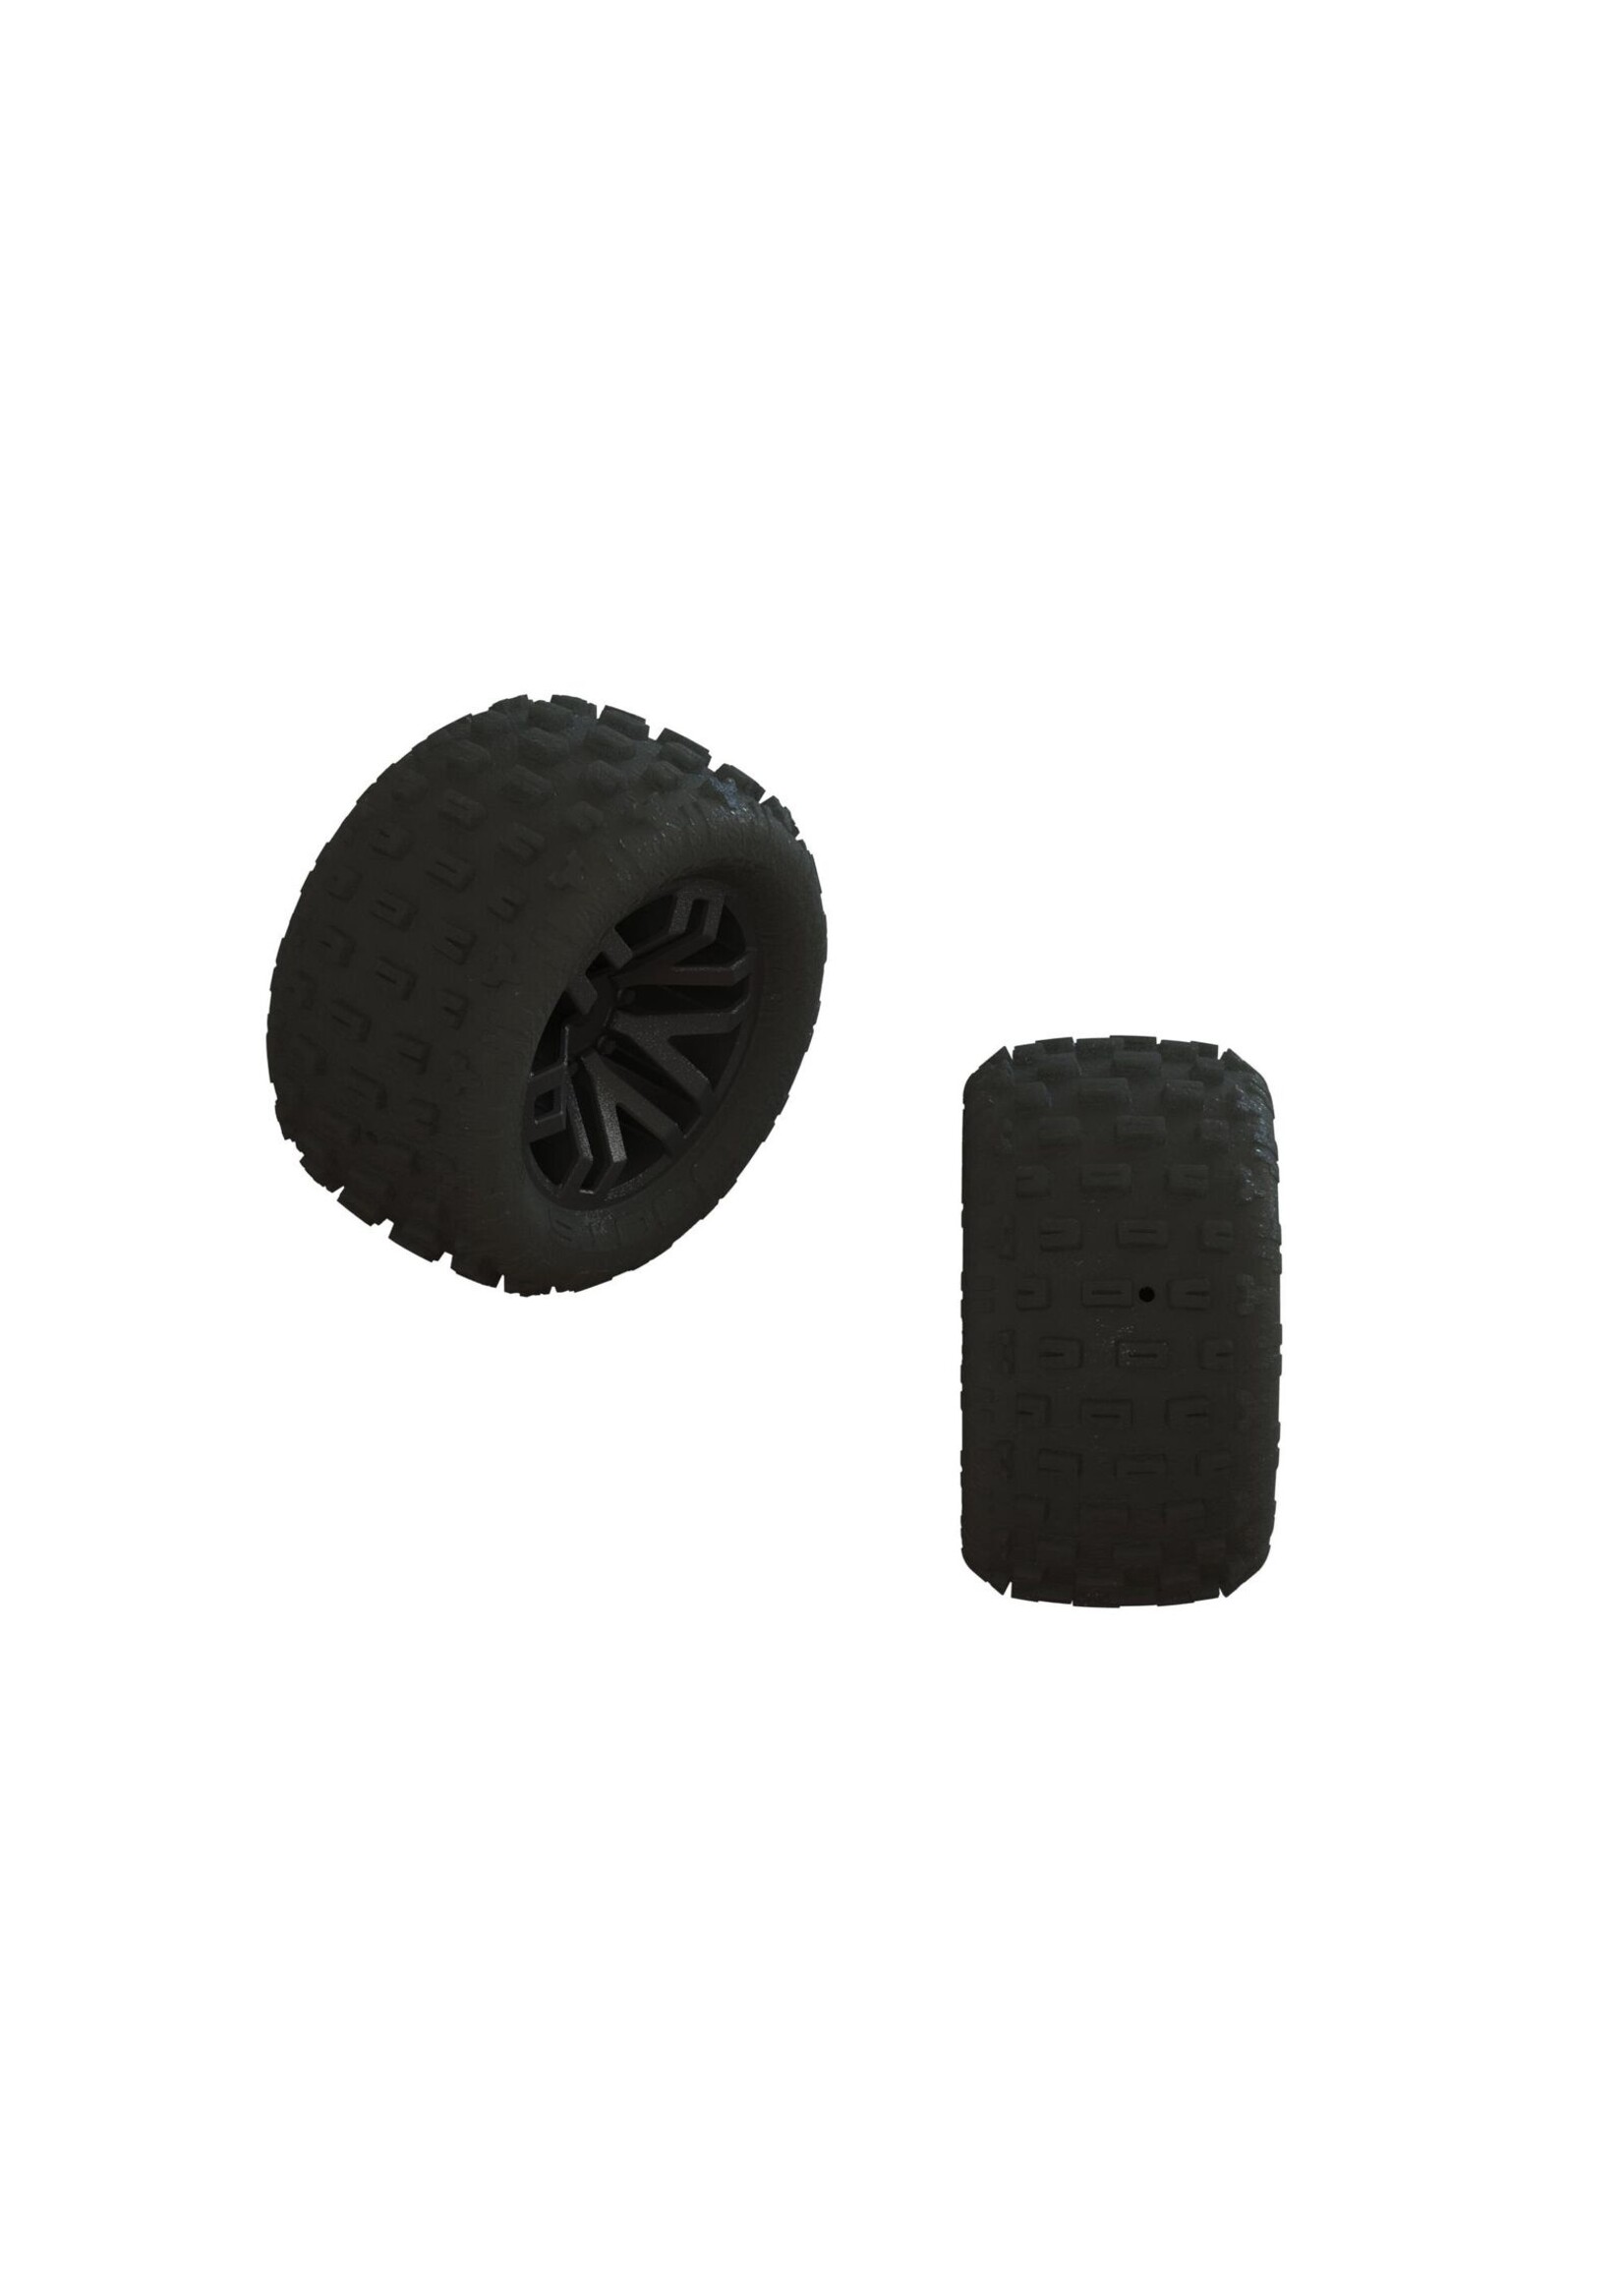 Arrma ARA550112 - dBoots 'Fortress' Tire Set, Glued - Black